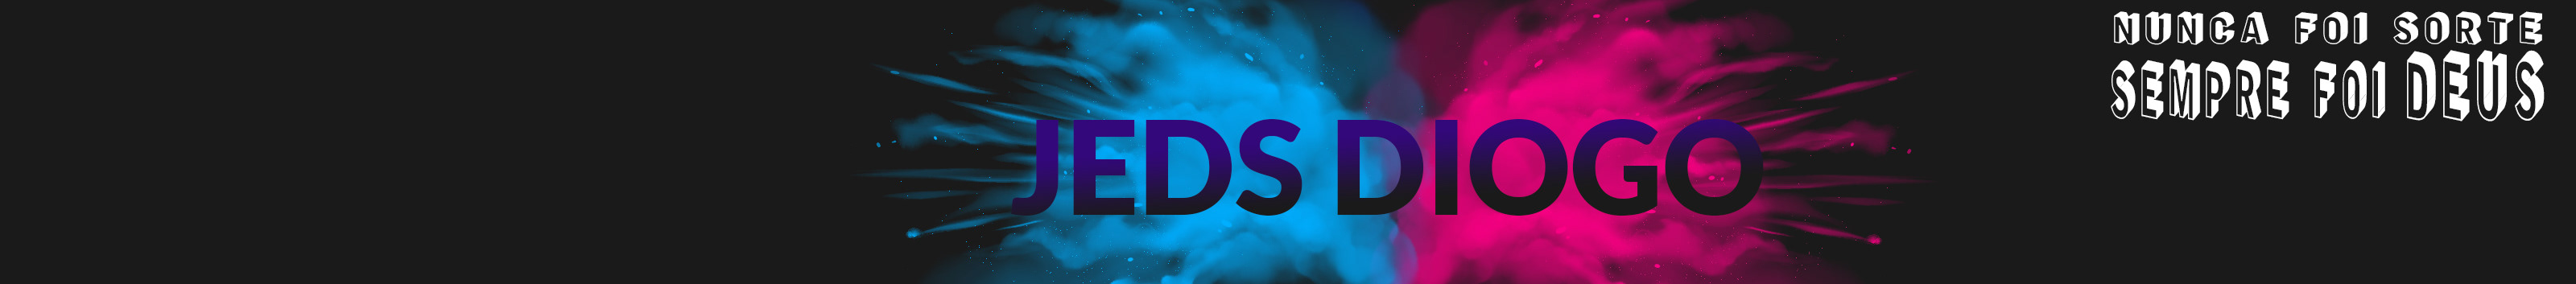 Banner del profilo di Jeds Diogo